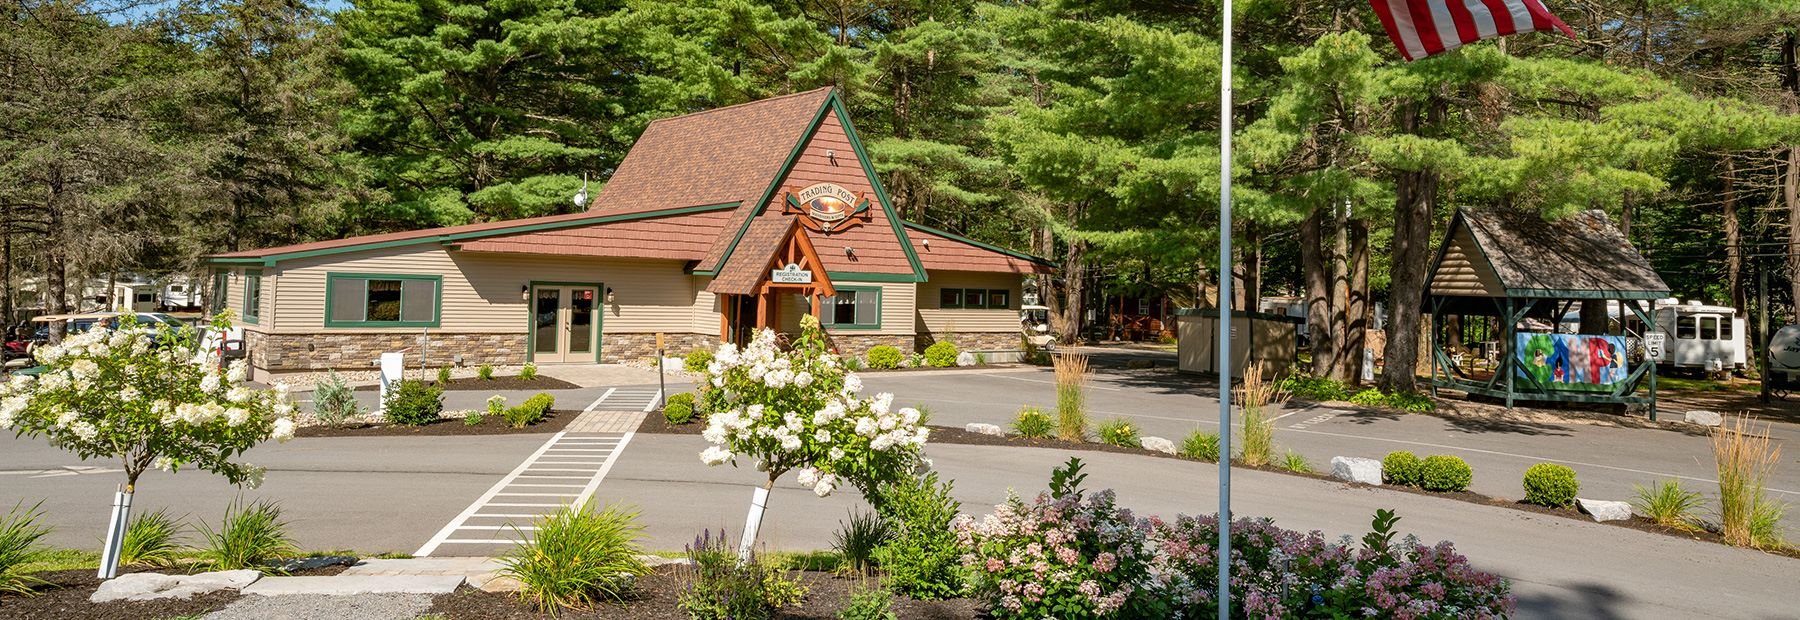 Adirondack Gateway RV Resort & Campground Gansevoort